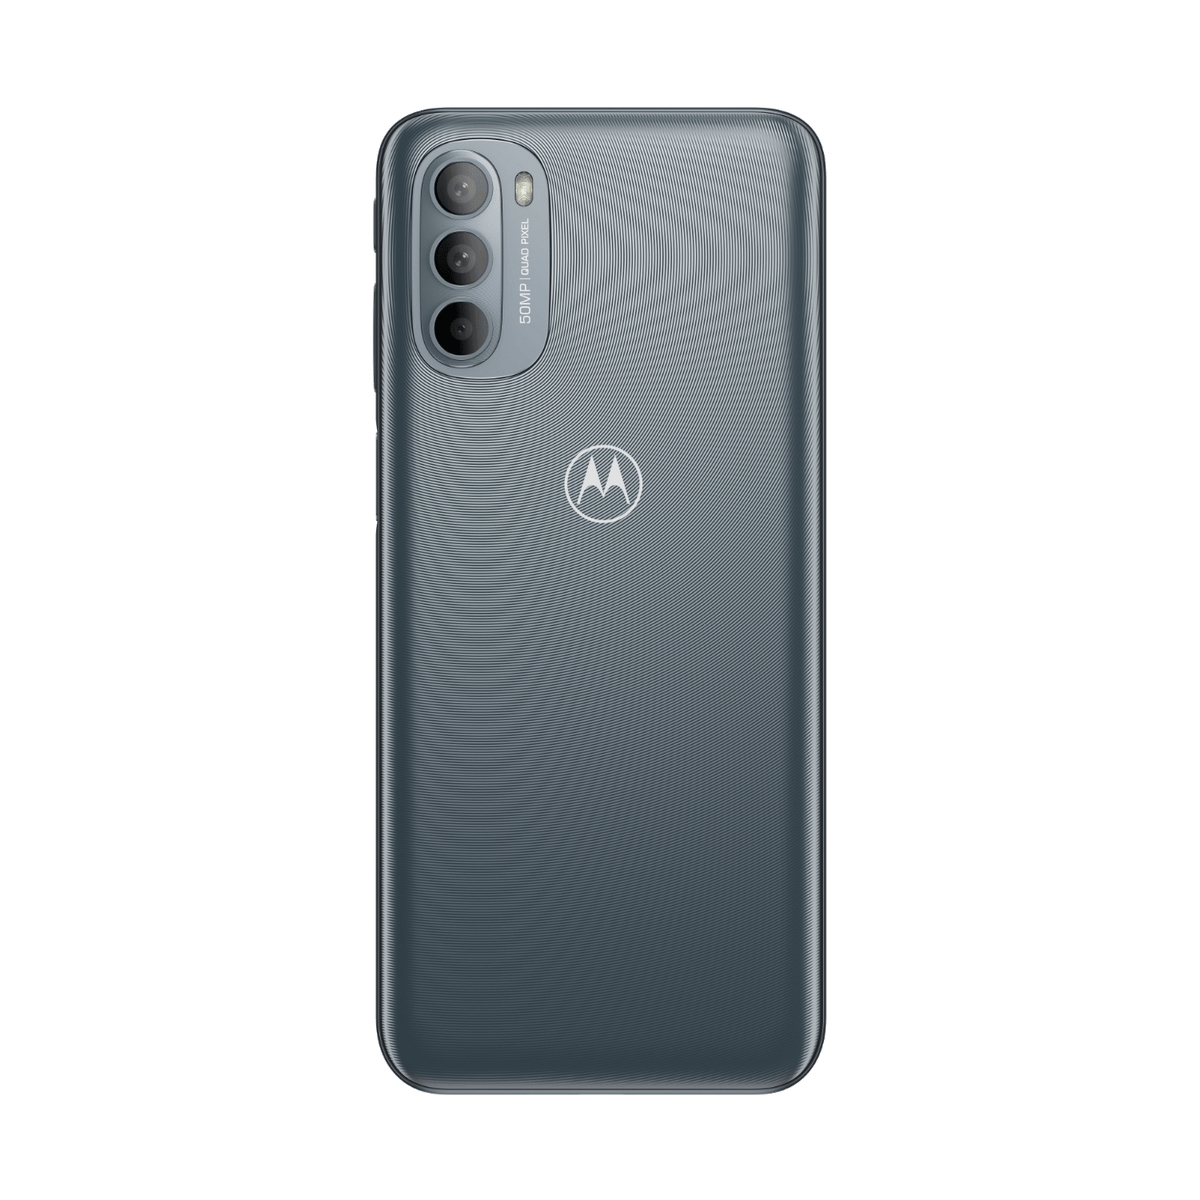 Motorola XT2173-3 Moto G31 4/64GB Dual SIM Grey